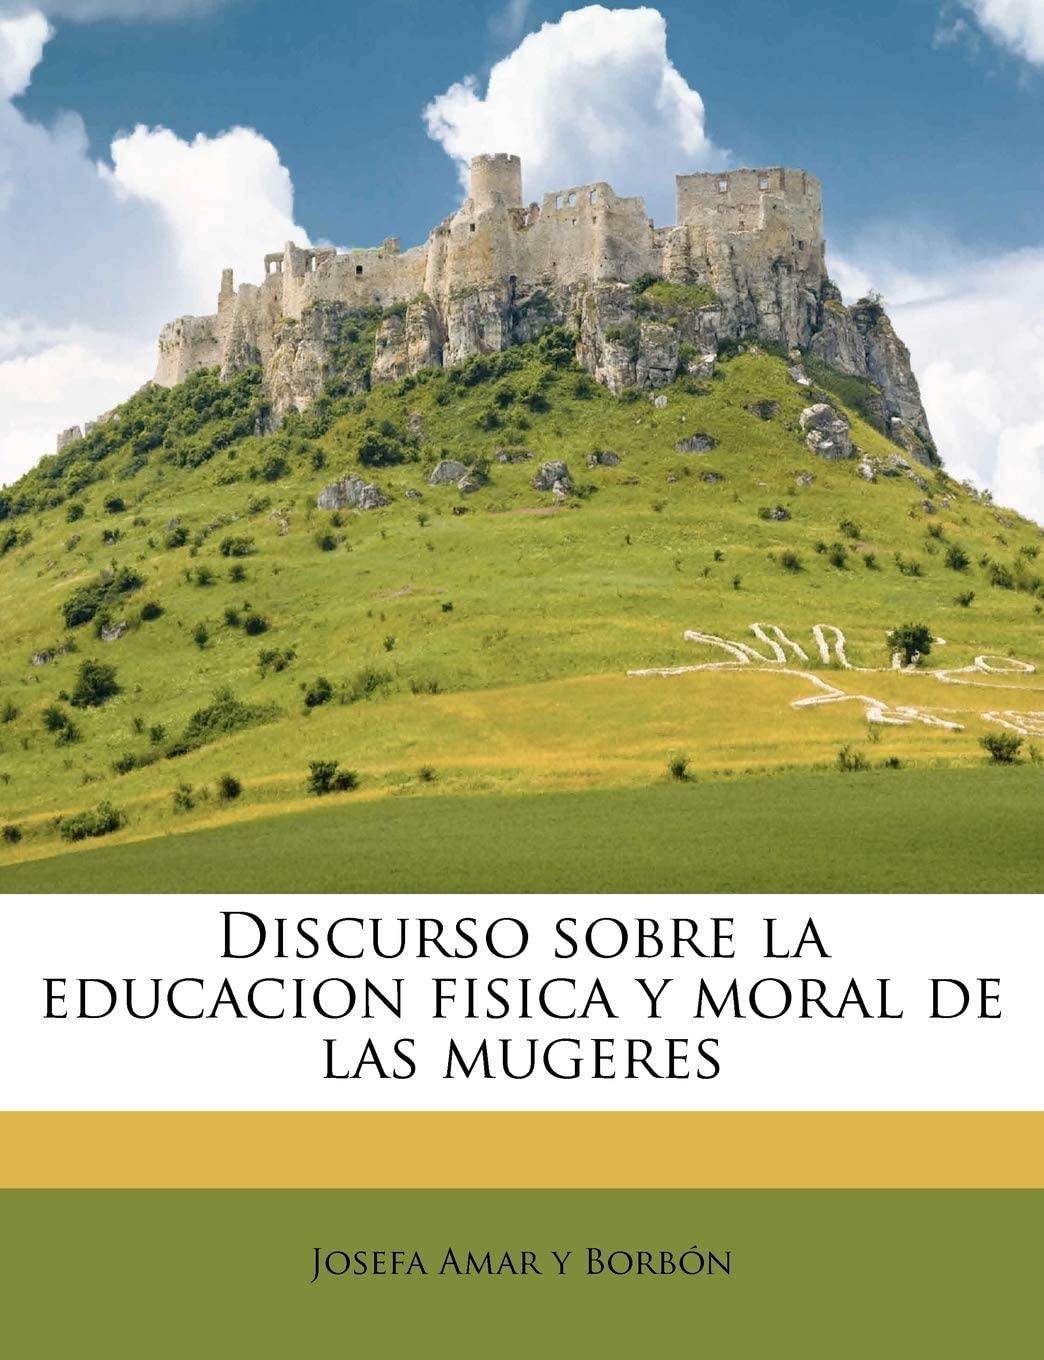 Discurso sobre la educacion fisica y moral de las mugeres (Spanish Edition)